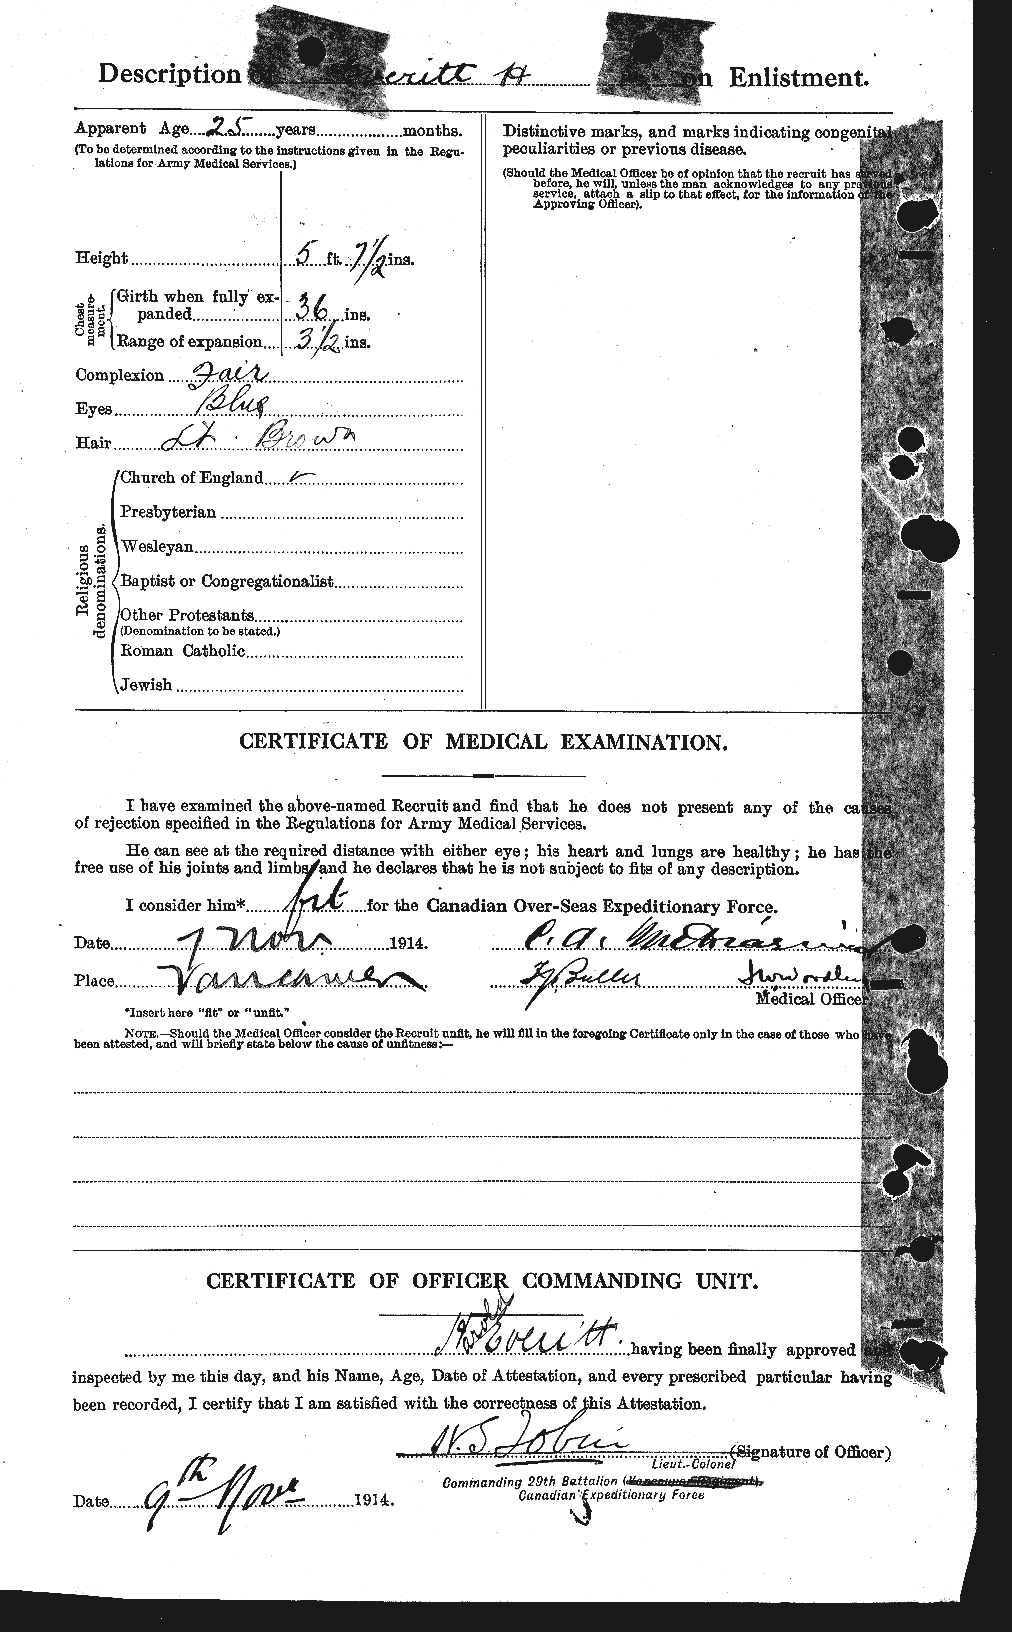 Dossiers du Personnel de la Première Guerre mondiale - CEC 320422b